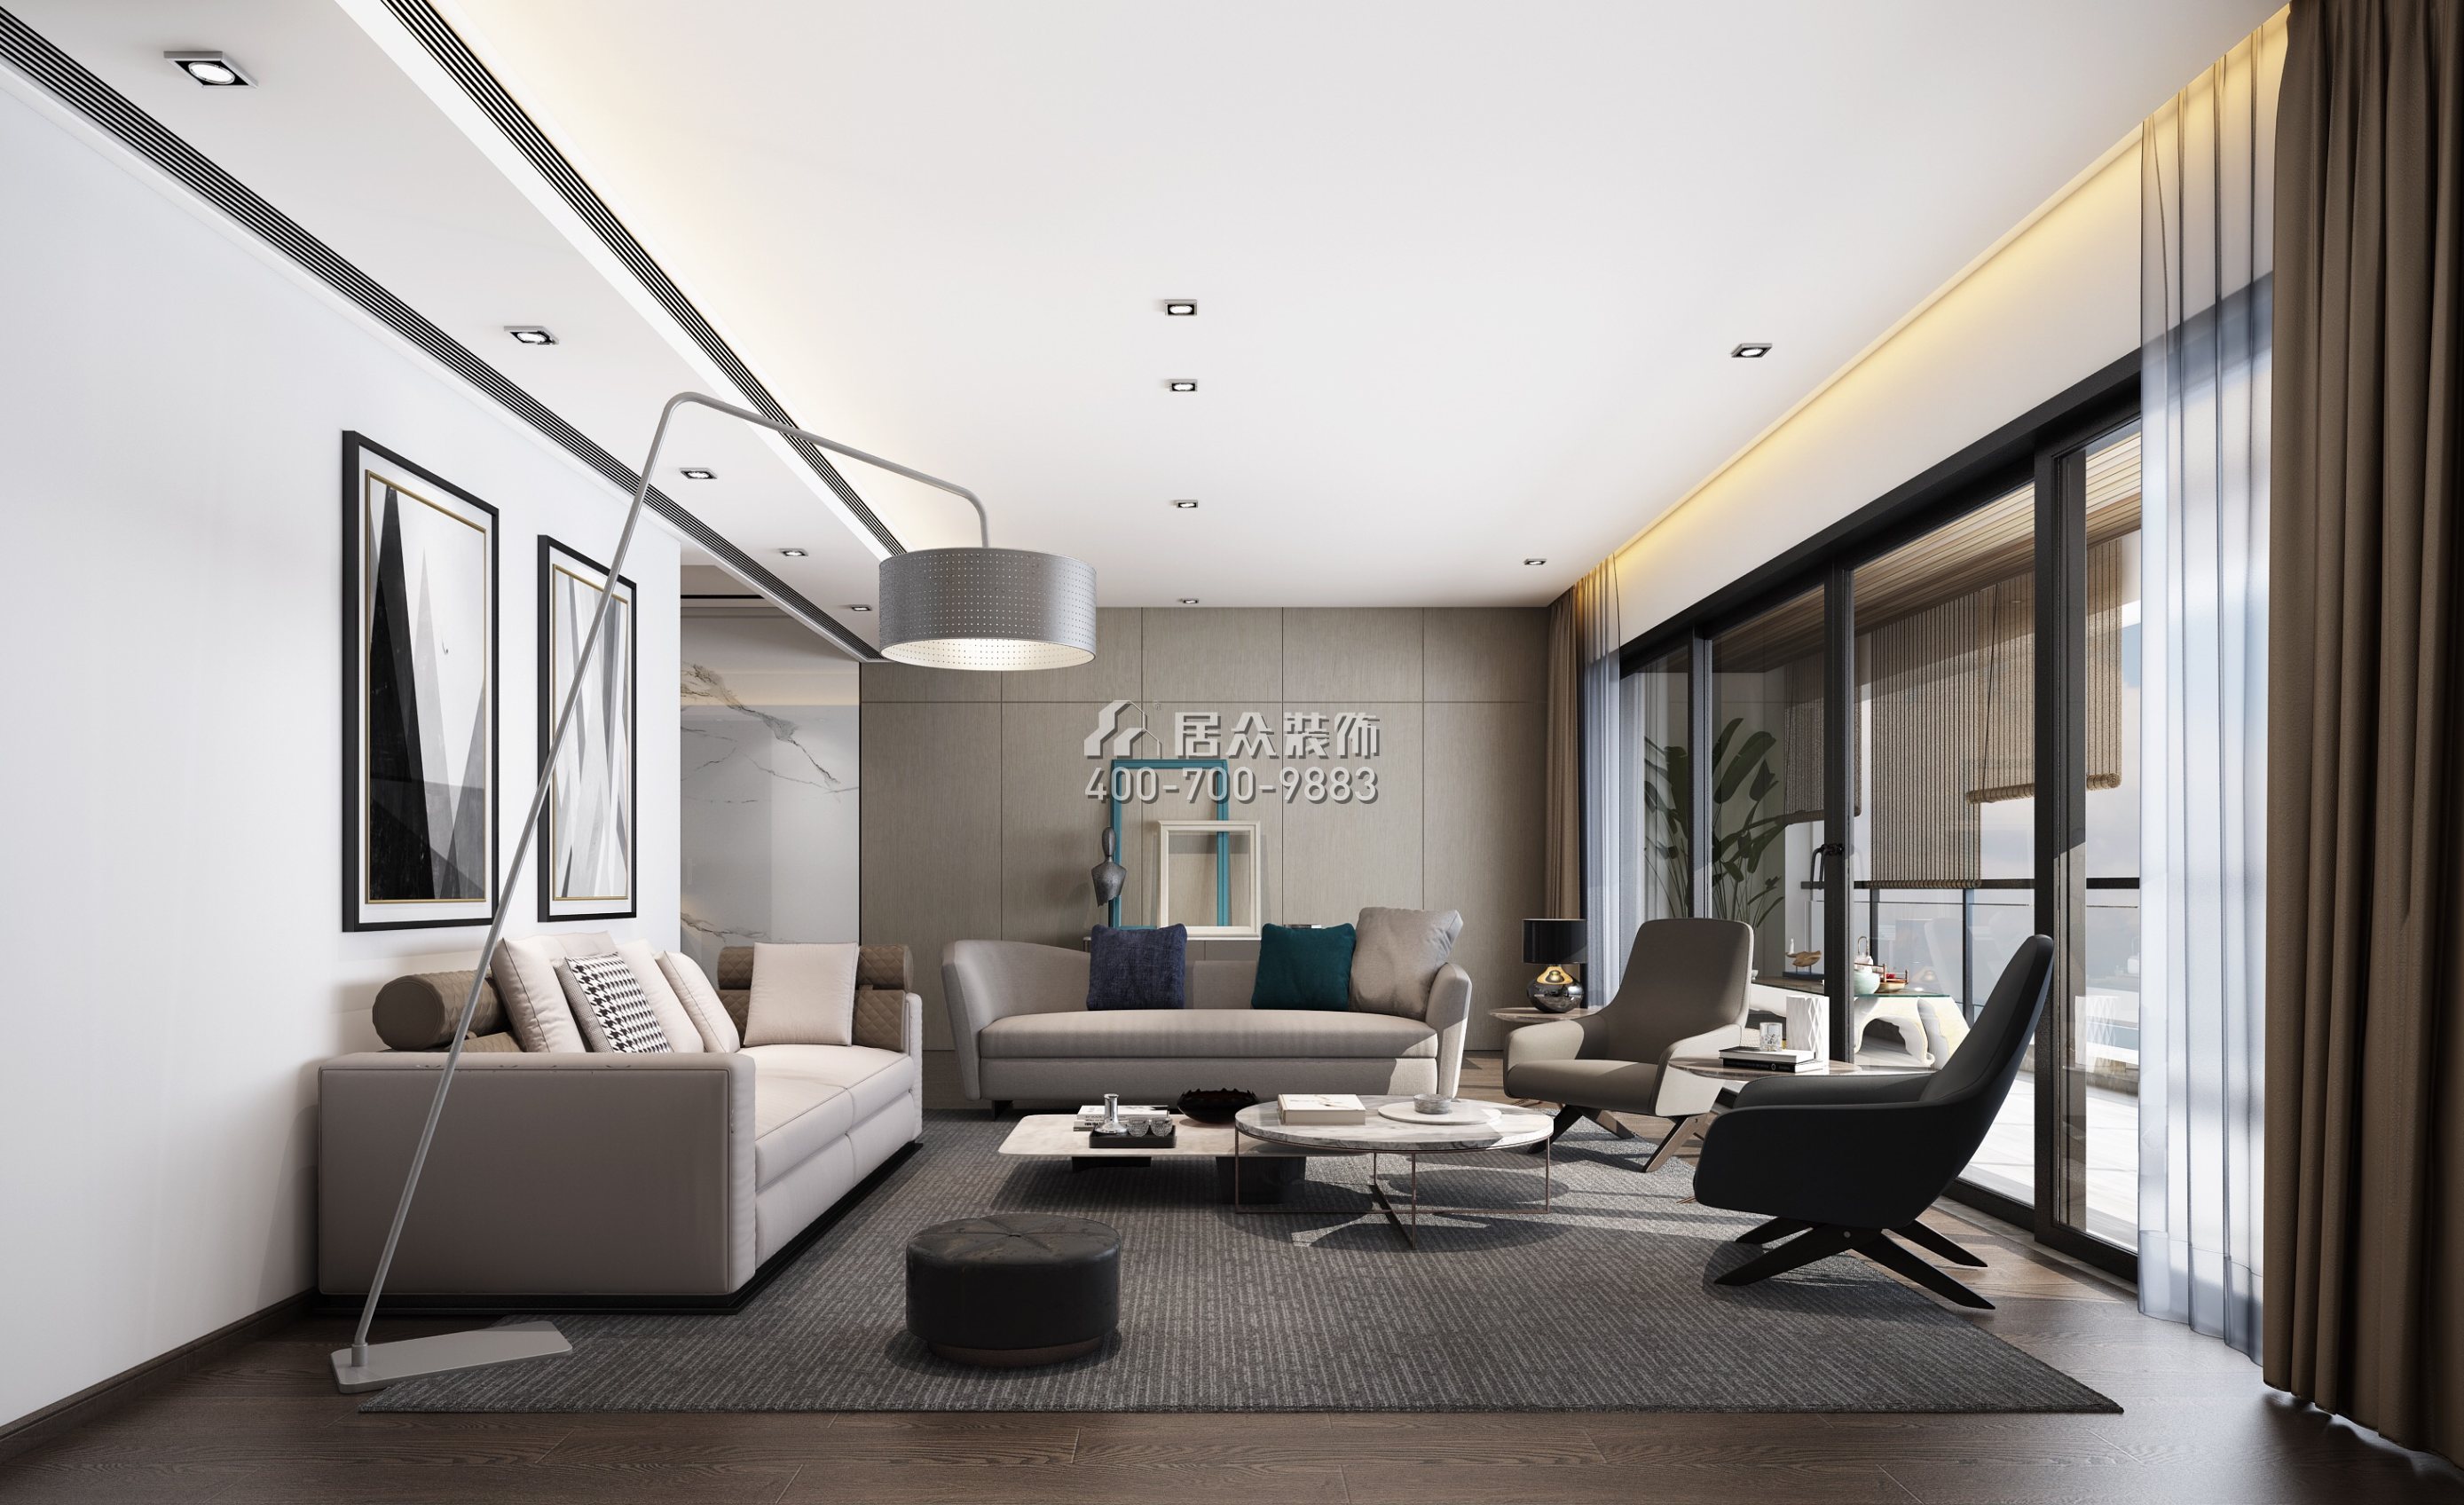 銀湖藍山潤園二期260平方米現代簡約風格平層戶型客廳裝修效果圖